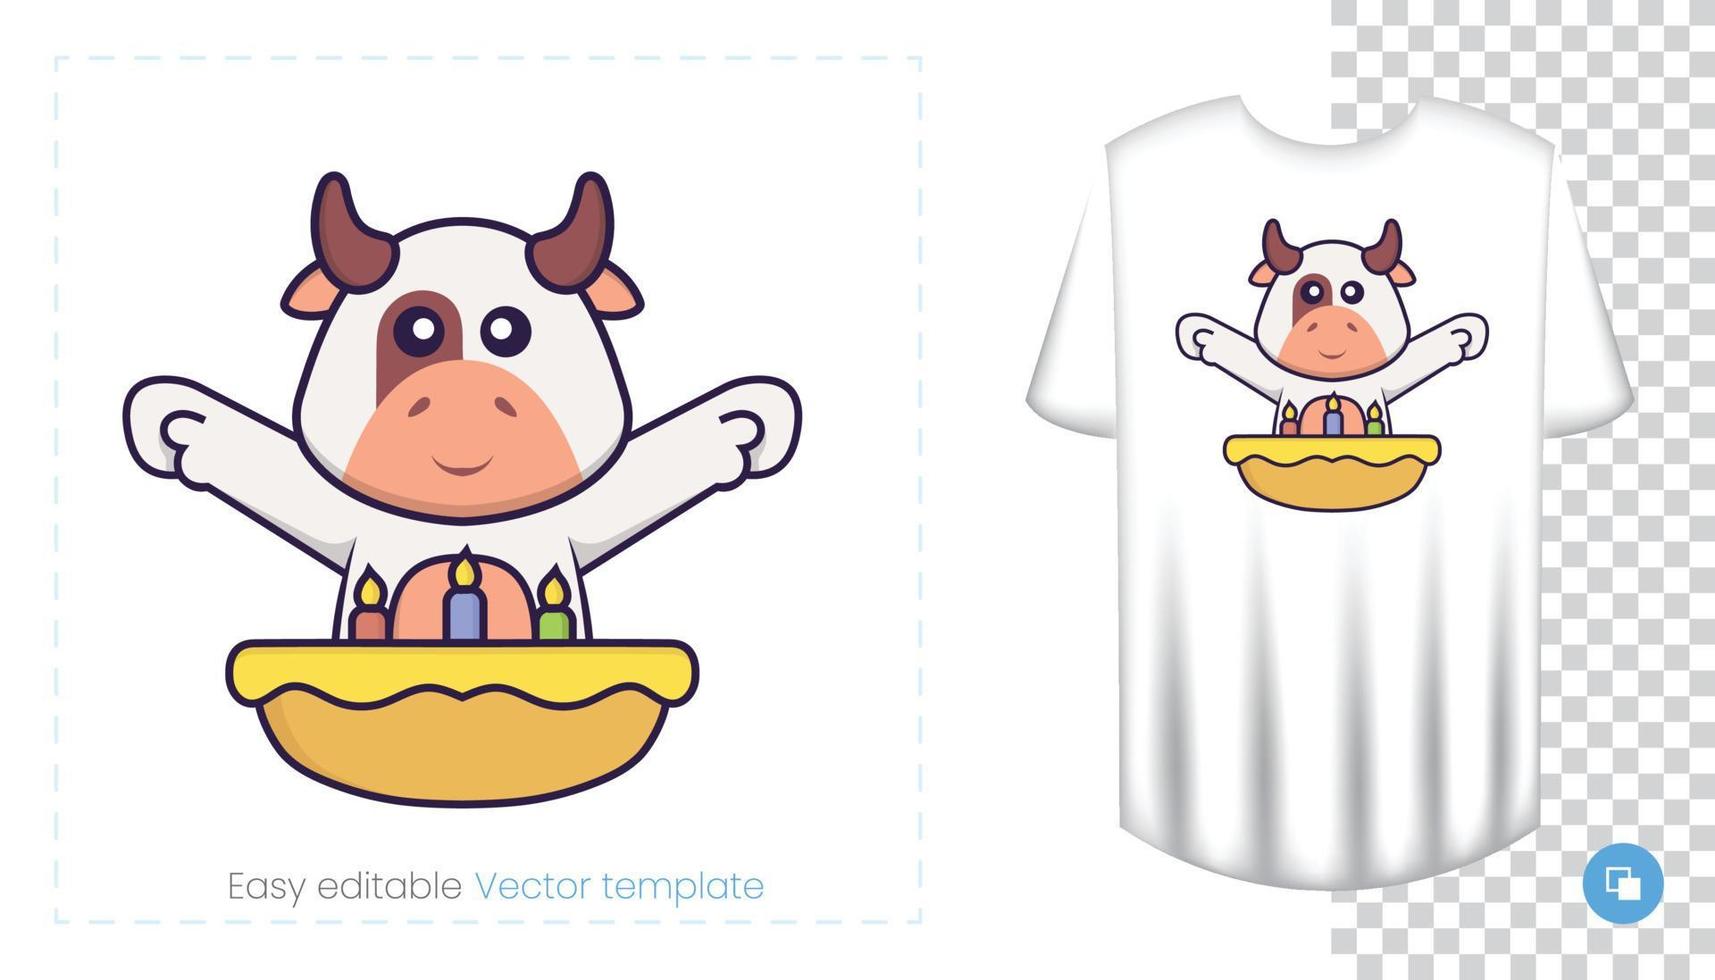 simpatico personaggio di mucca. stampe su t-shirt, felpe, custodie per cellulari, souvenir. illustrazione vettoriale isolato su sfondo bianco.